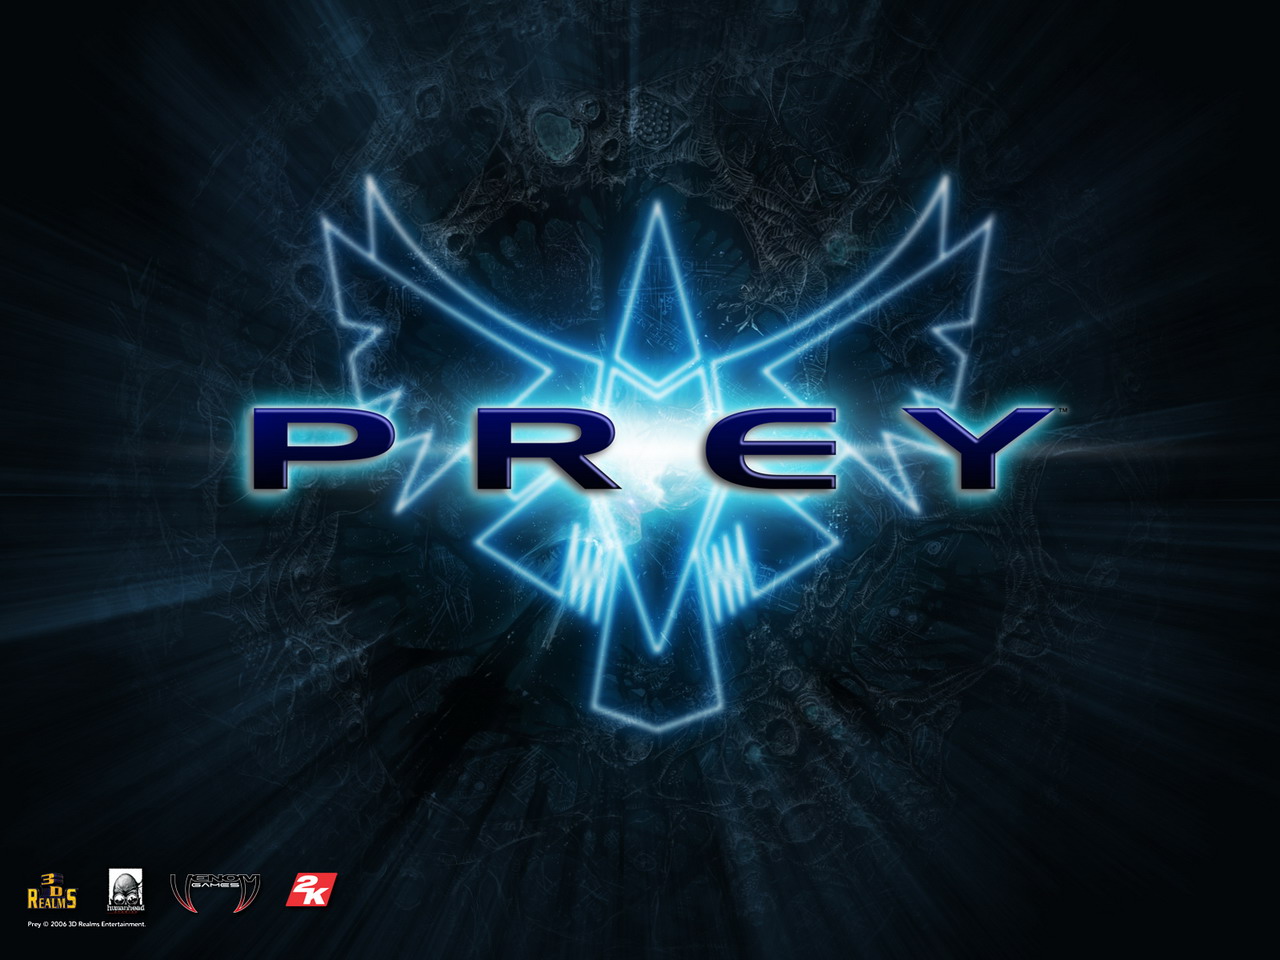 Prey Game Logo Wallpaper 40816 1280x1024 px